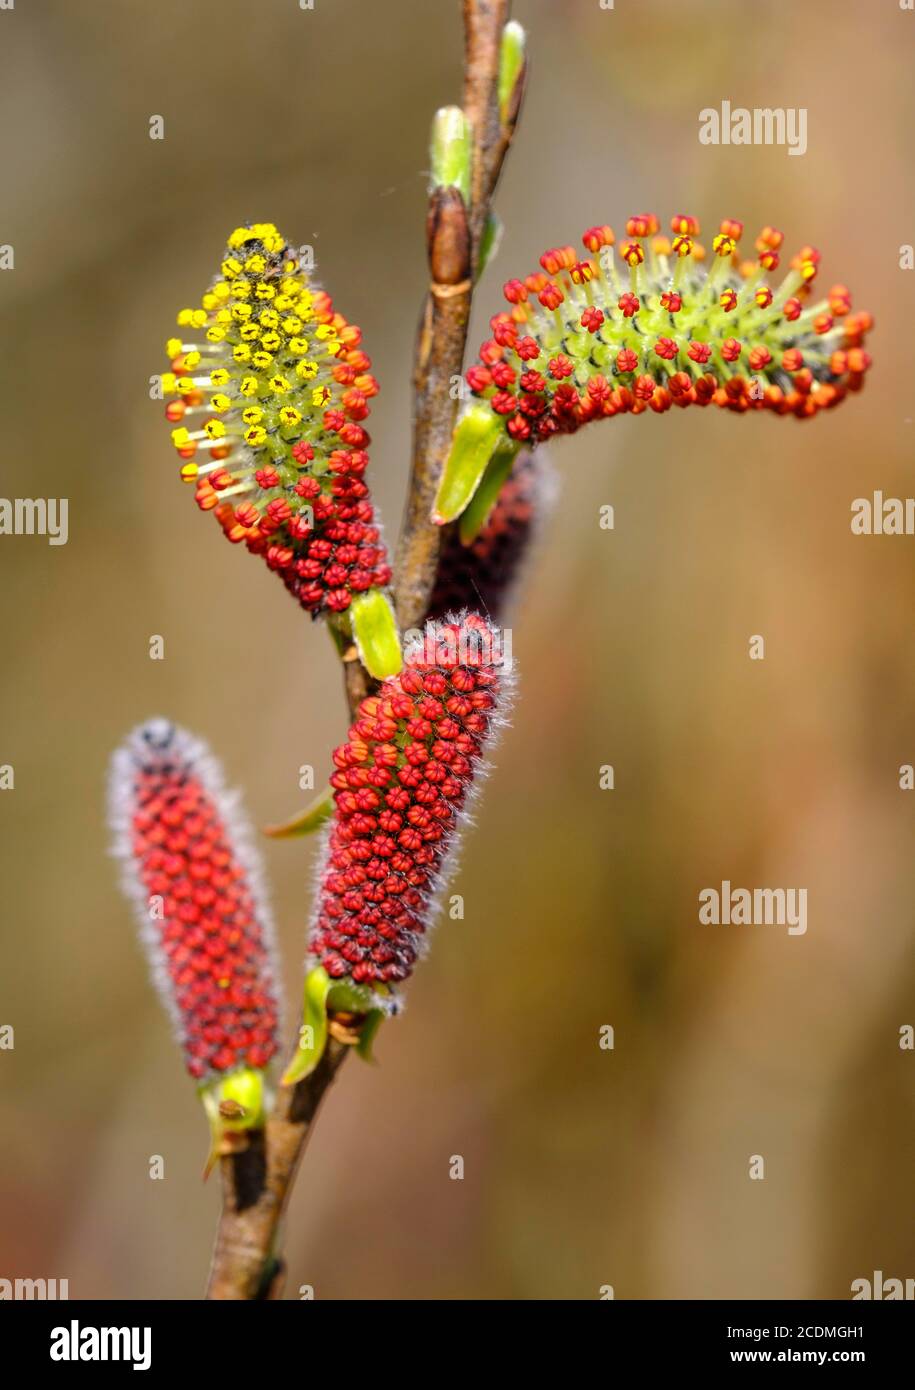 Chatons de fleurs mâles de saule pourpre (Salix purpurea), chatons de saule, Isarauen près de Geretsried, haute-Bavière, Bavière, Allemagne Banque D'Images